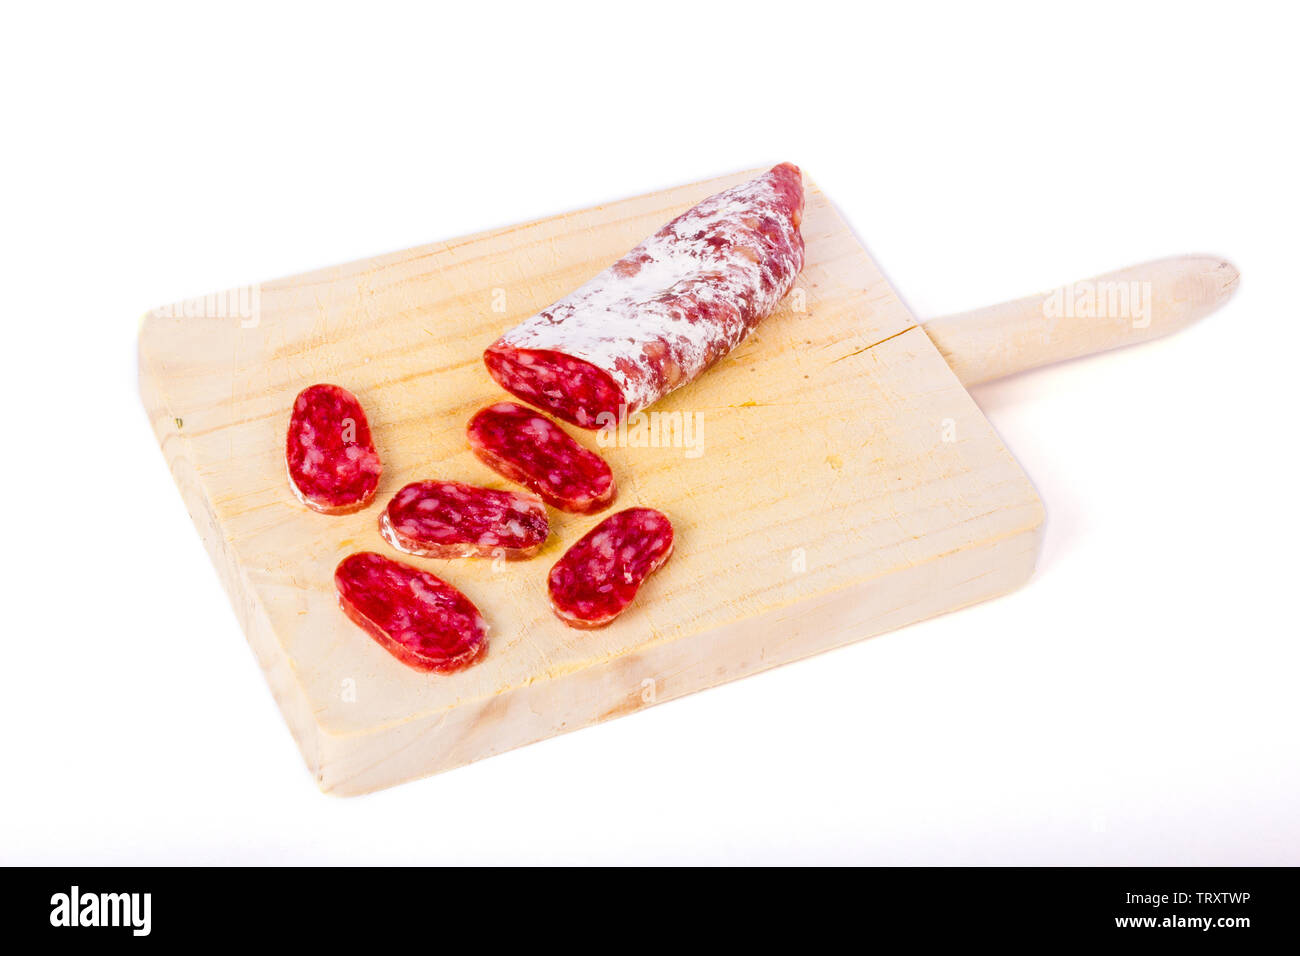 Spanisch fuet, eine trockene Wurst typische in Katalonien Region, in Scheiben geschnitten auf einer hölzernen Küchentisch Stockfoto